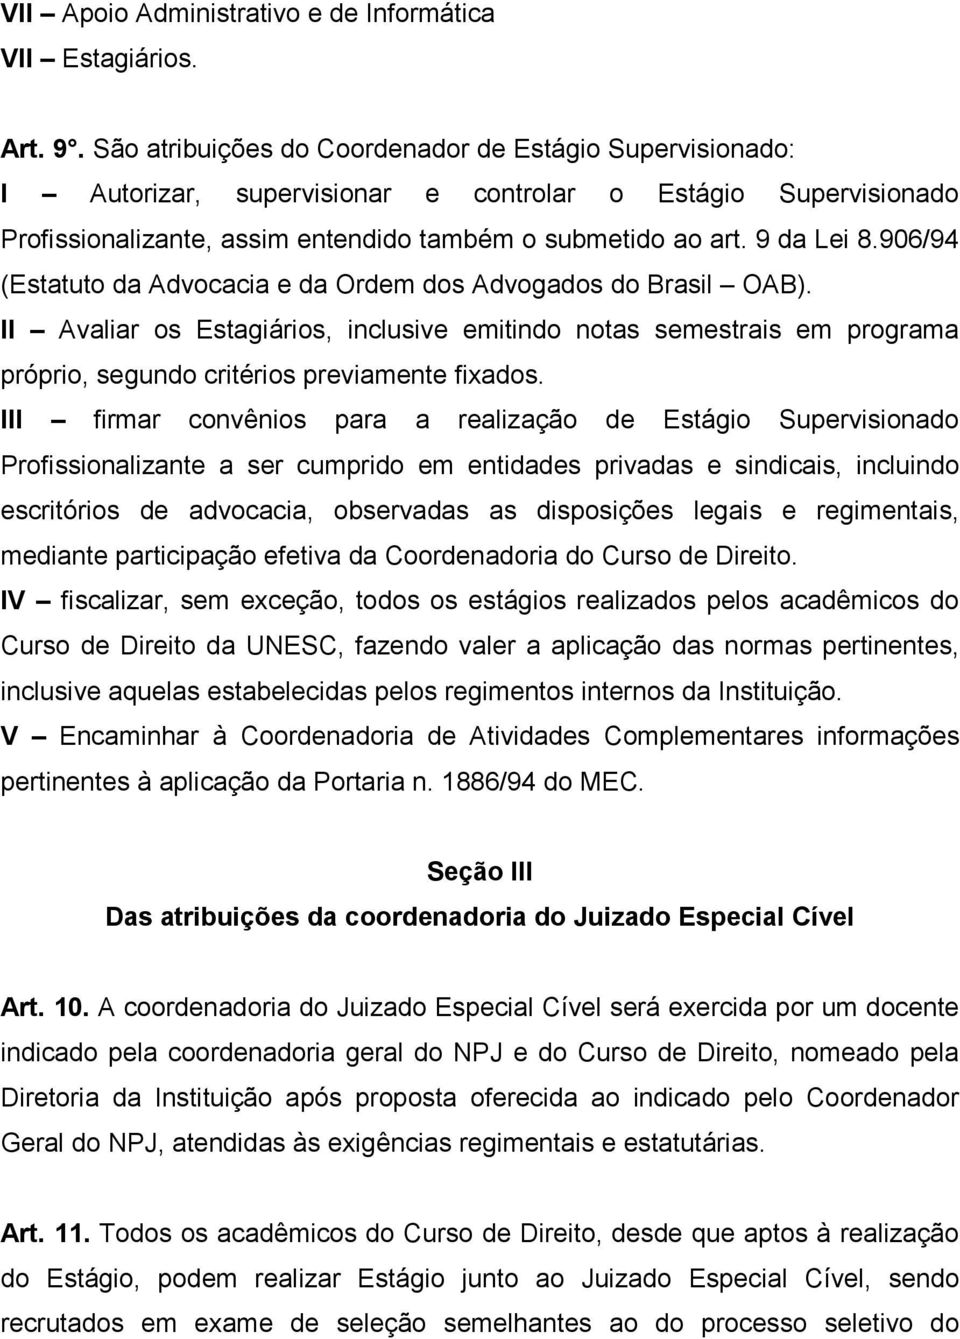 906/94 (Estatuto da Advocacia e da Ordem dos Advogados do Brasil OAB). II Avaliar os Estagiários, inclusive emitindo notas semestrais em programa próprio, segundo critérios previamente fixados.